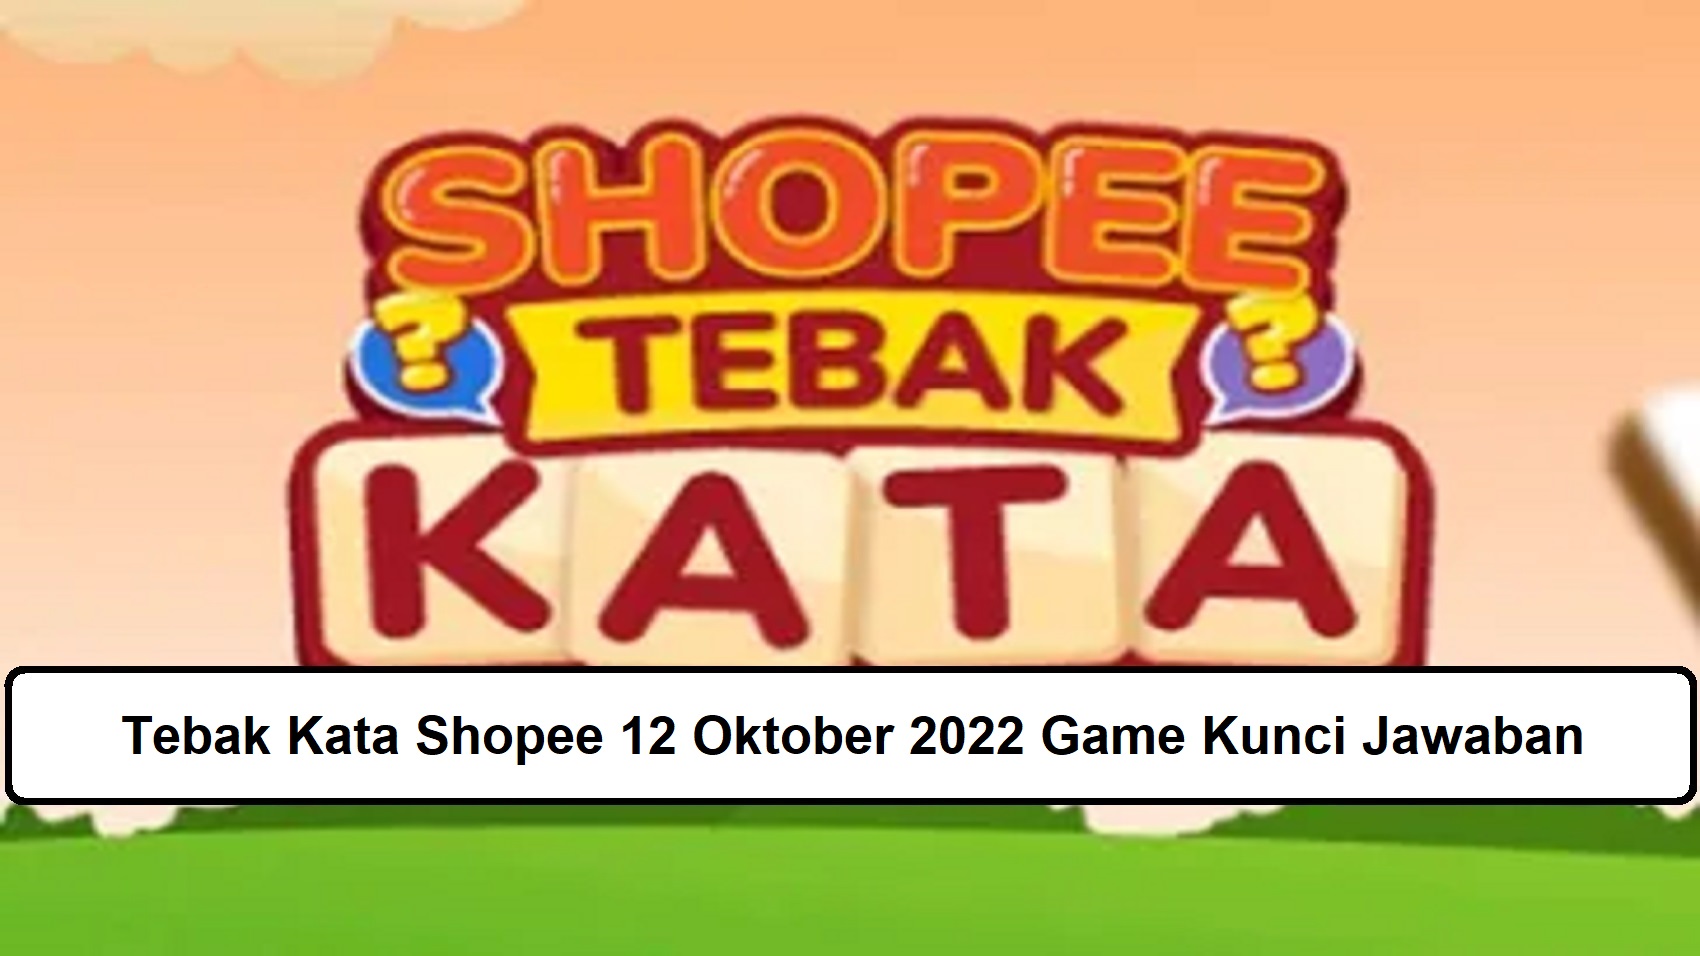 Tebak Kata Shopee 12 Oktober 2022 Game Kunci Jawaban